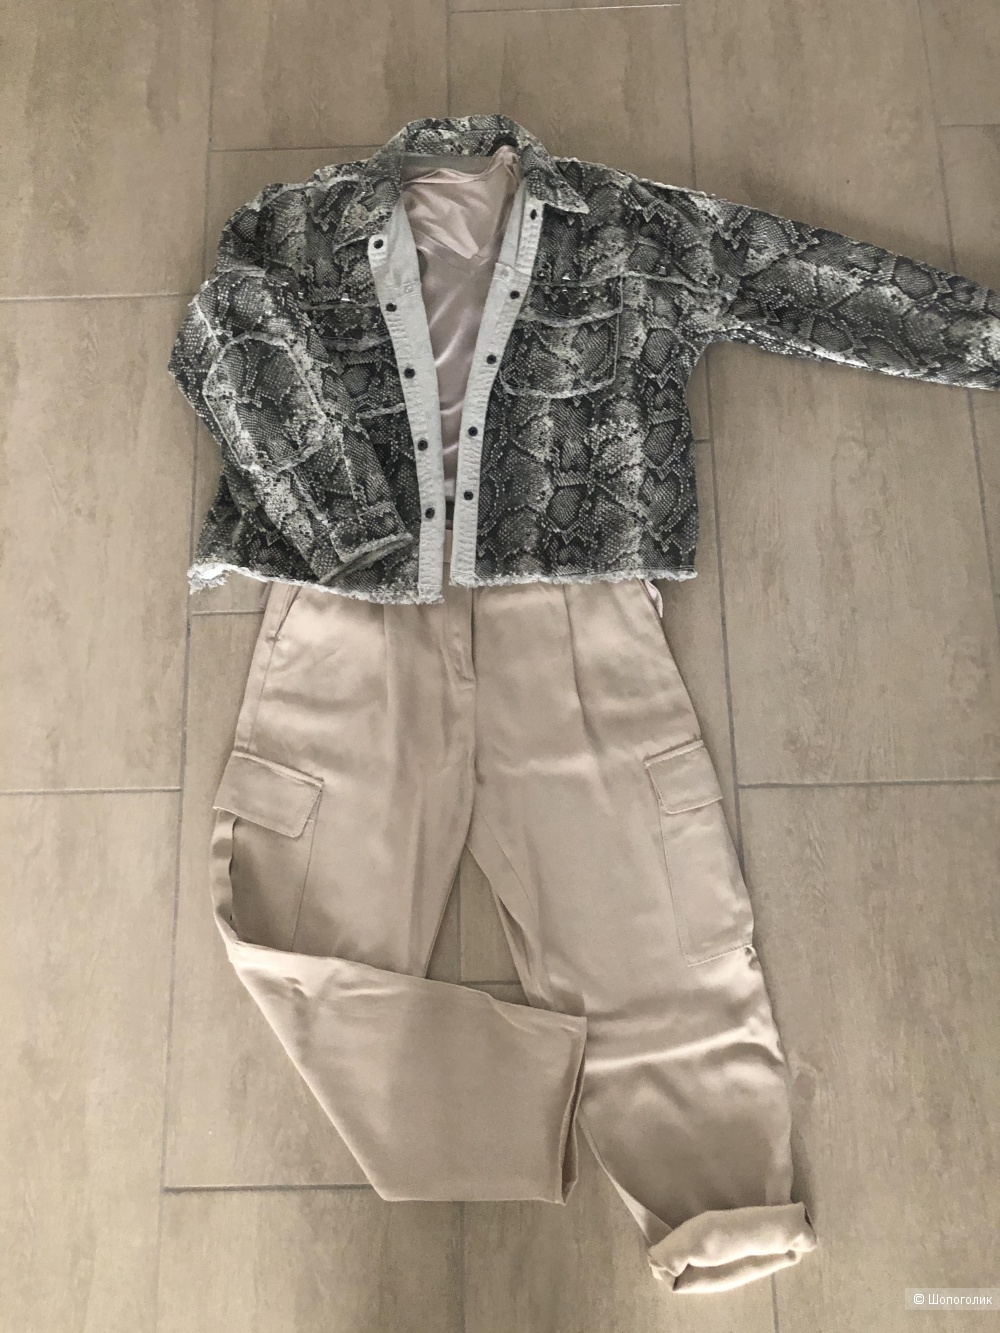 Сет (Брюки Massimo Dutti, куртка Zara, топ ASOS) на 42 размер.